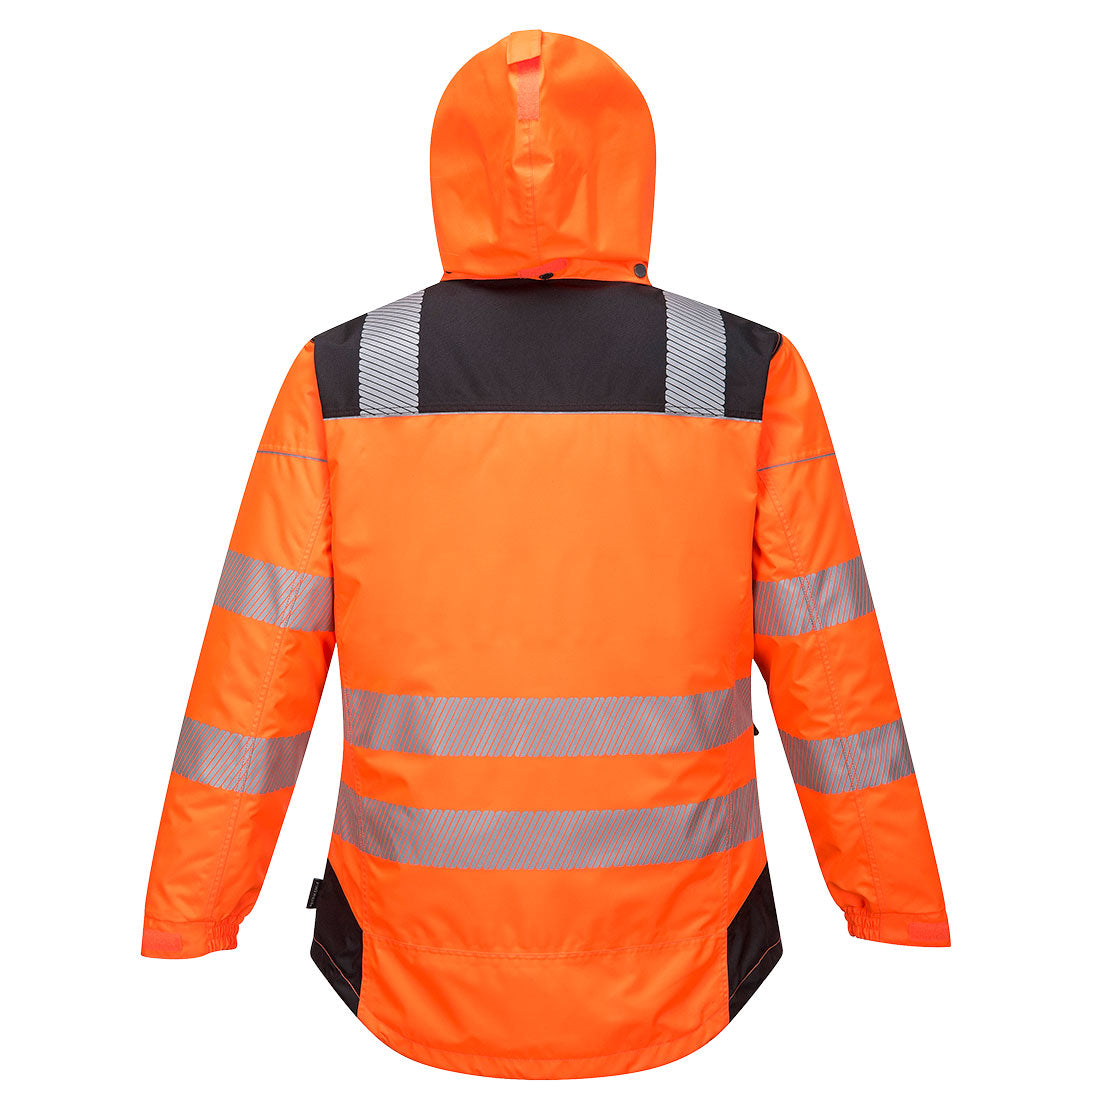 Portwest PW3 Hi-Vis Winter Jacket Orange/Black T400